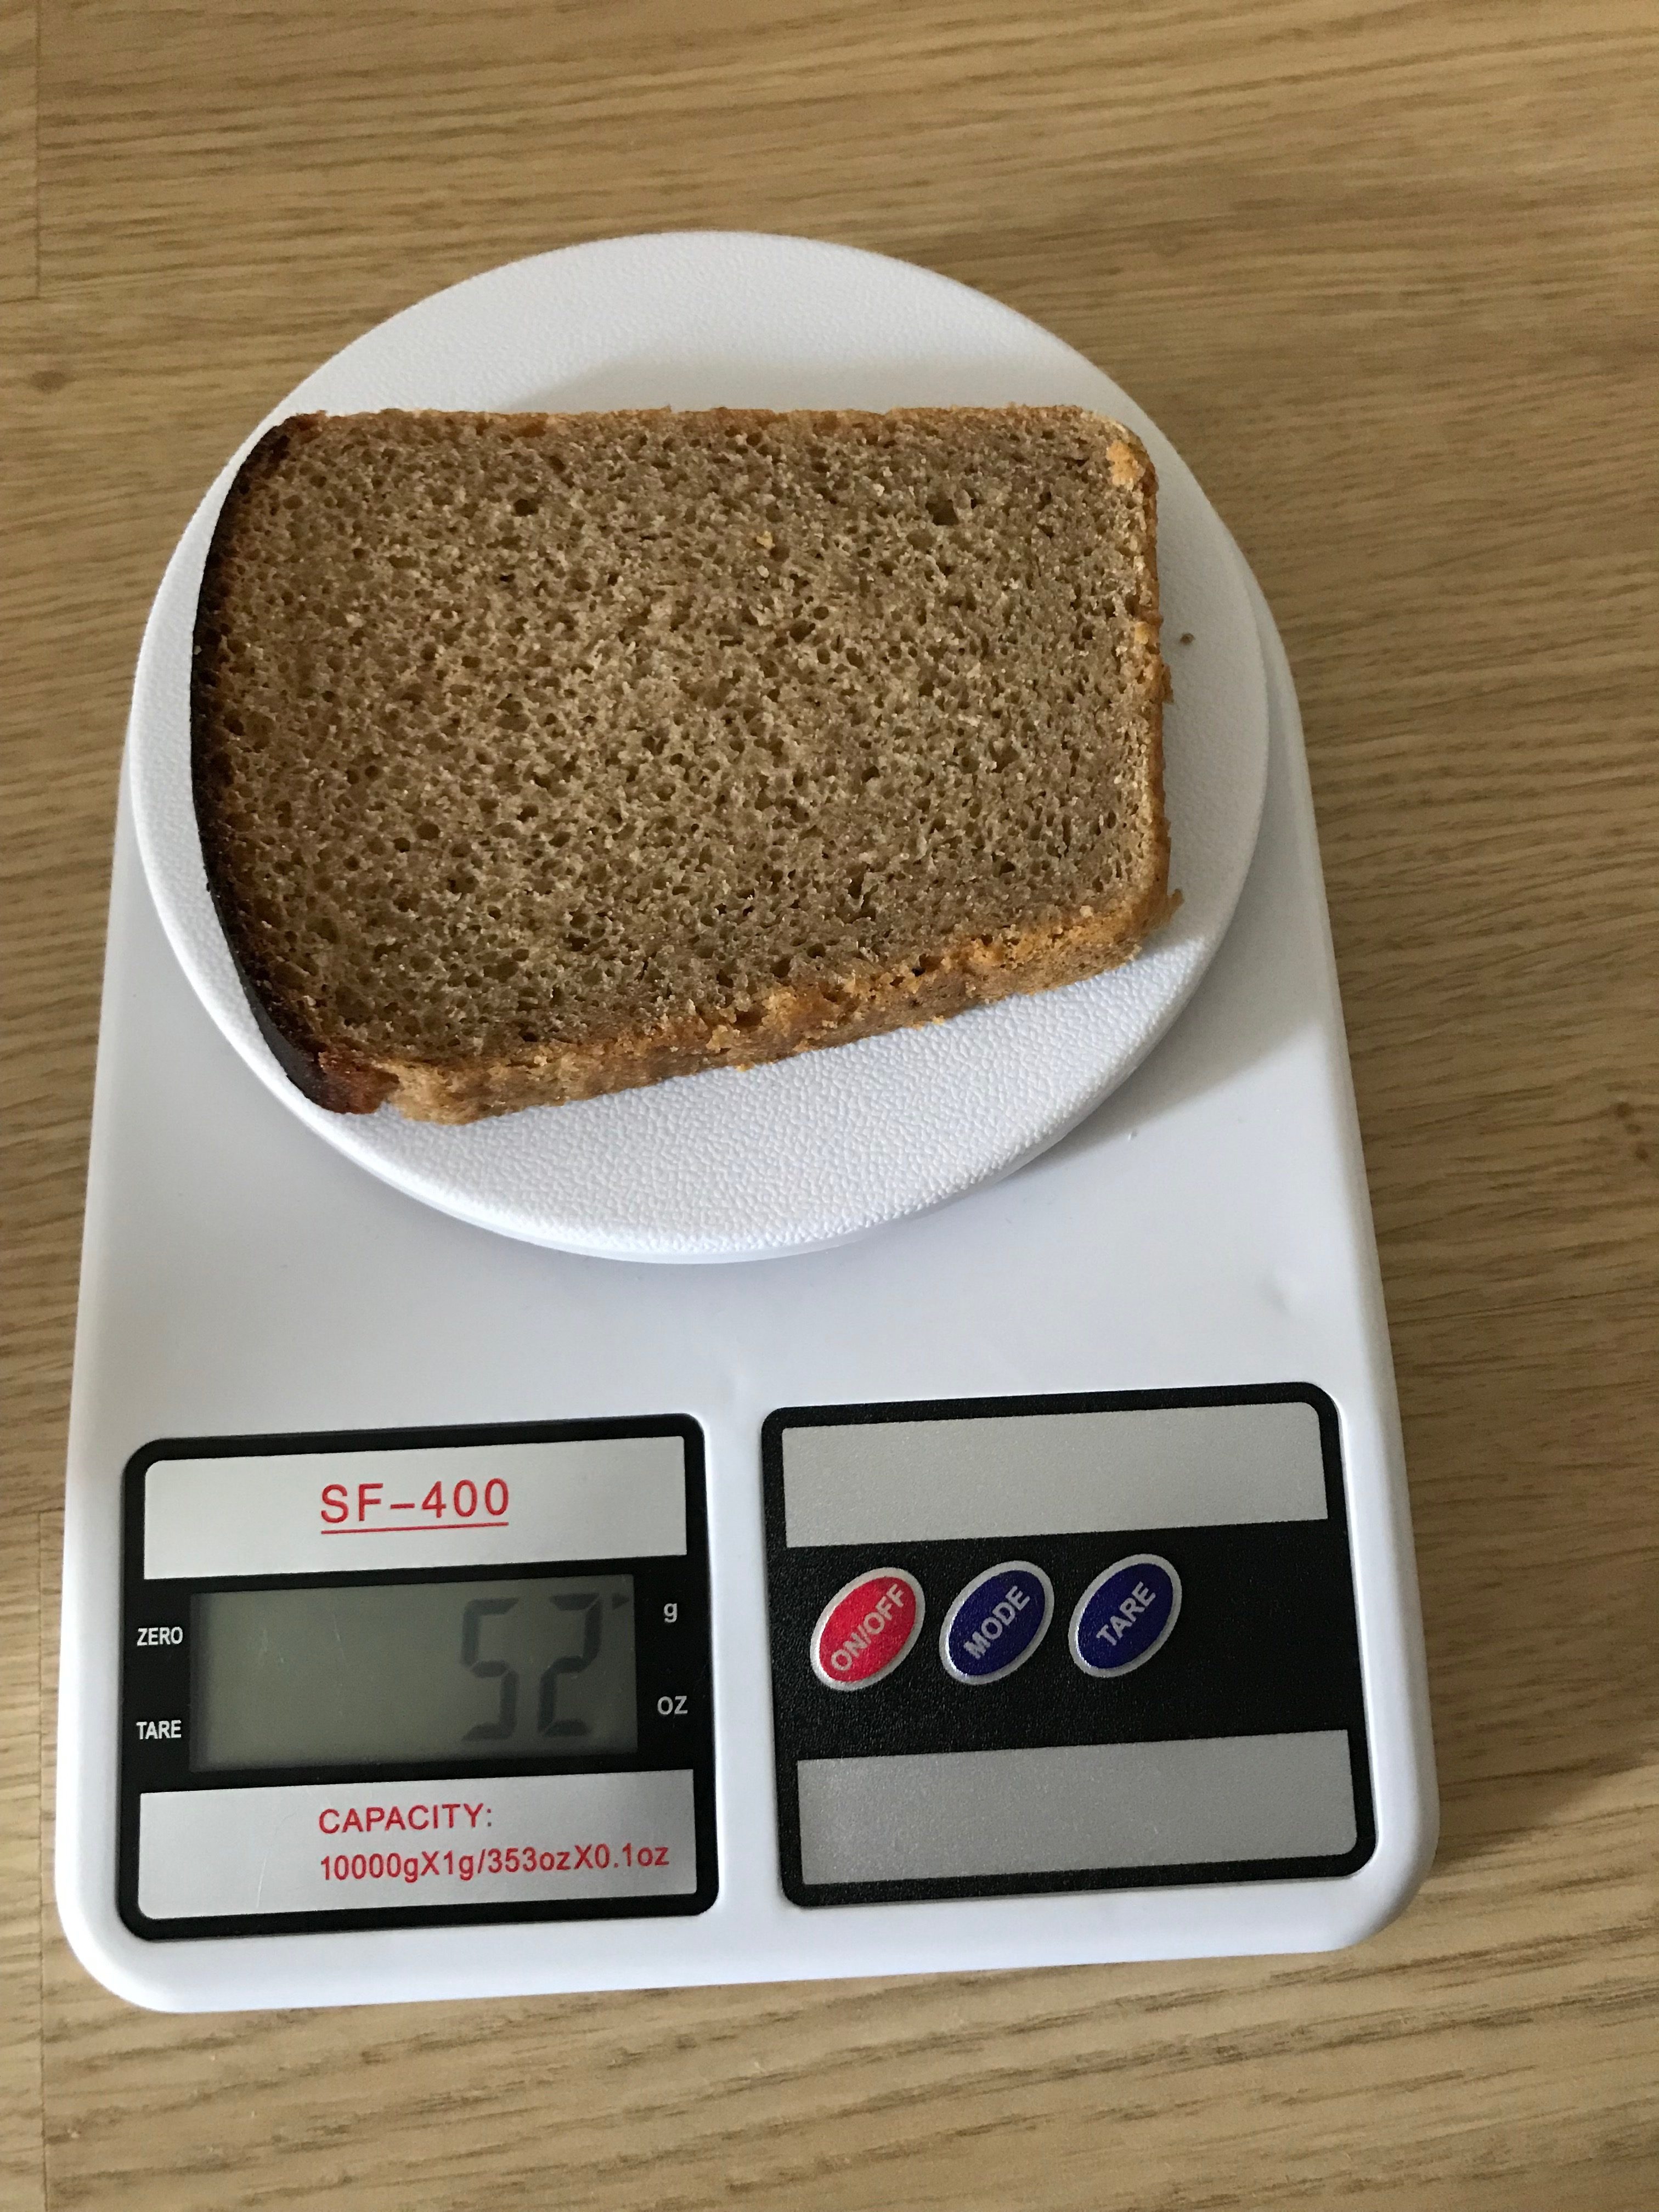 Bir parça siyah ekmeğin ağırlığı ne kadardır?